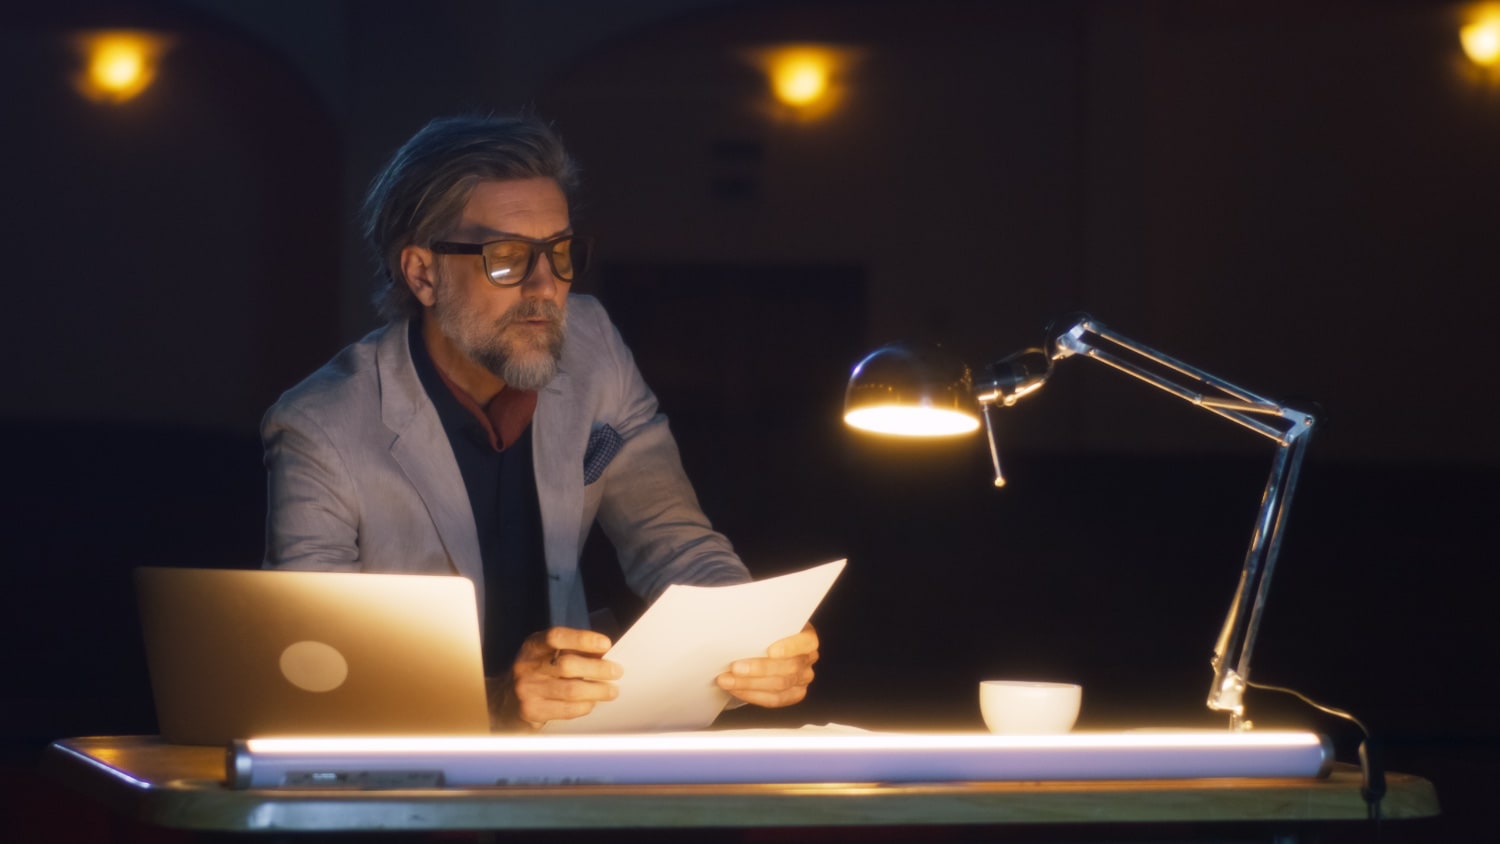 Mann mittleren Alters sitzt im Dunkeln am Schreibtisch mit heller Schreibtischlampe.